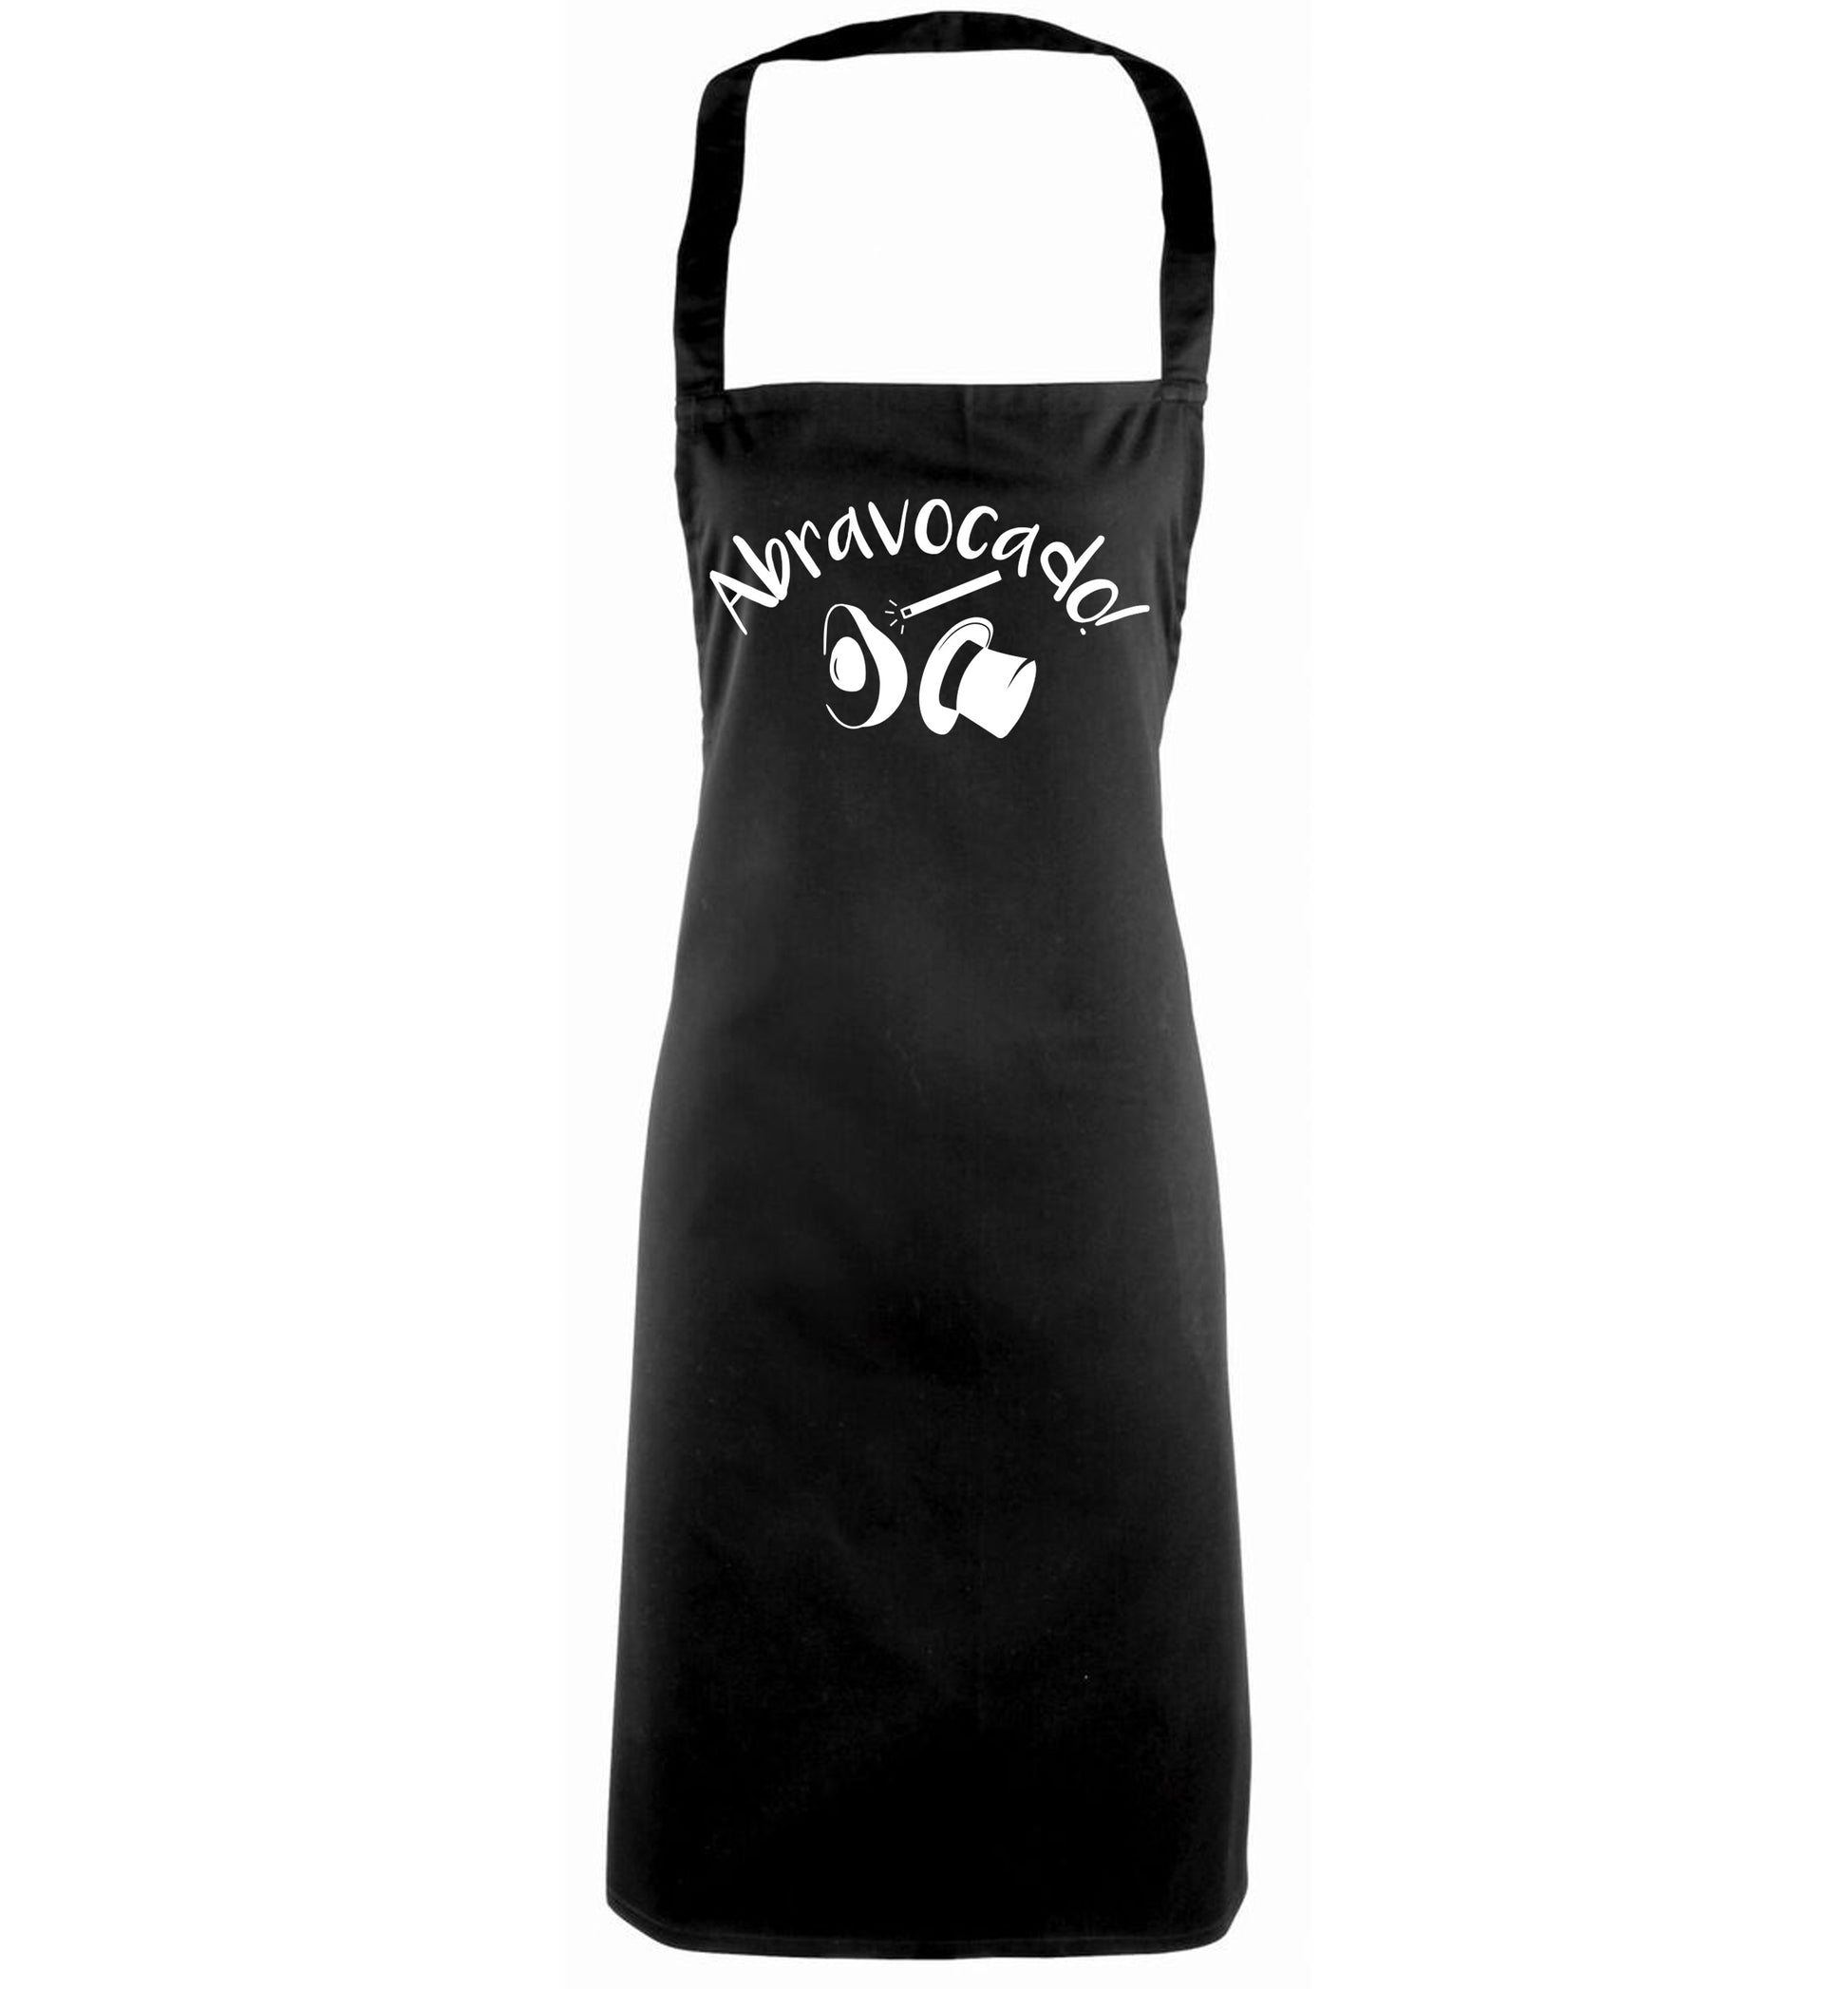 Abravocado black apron